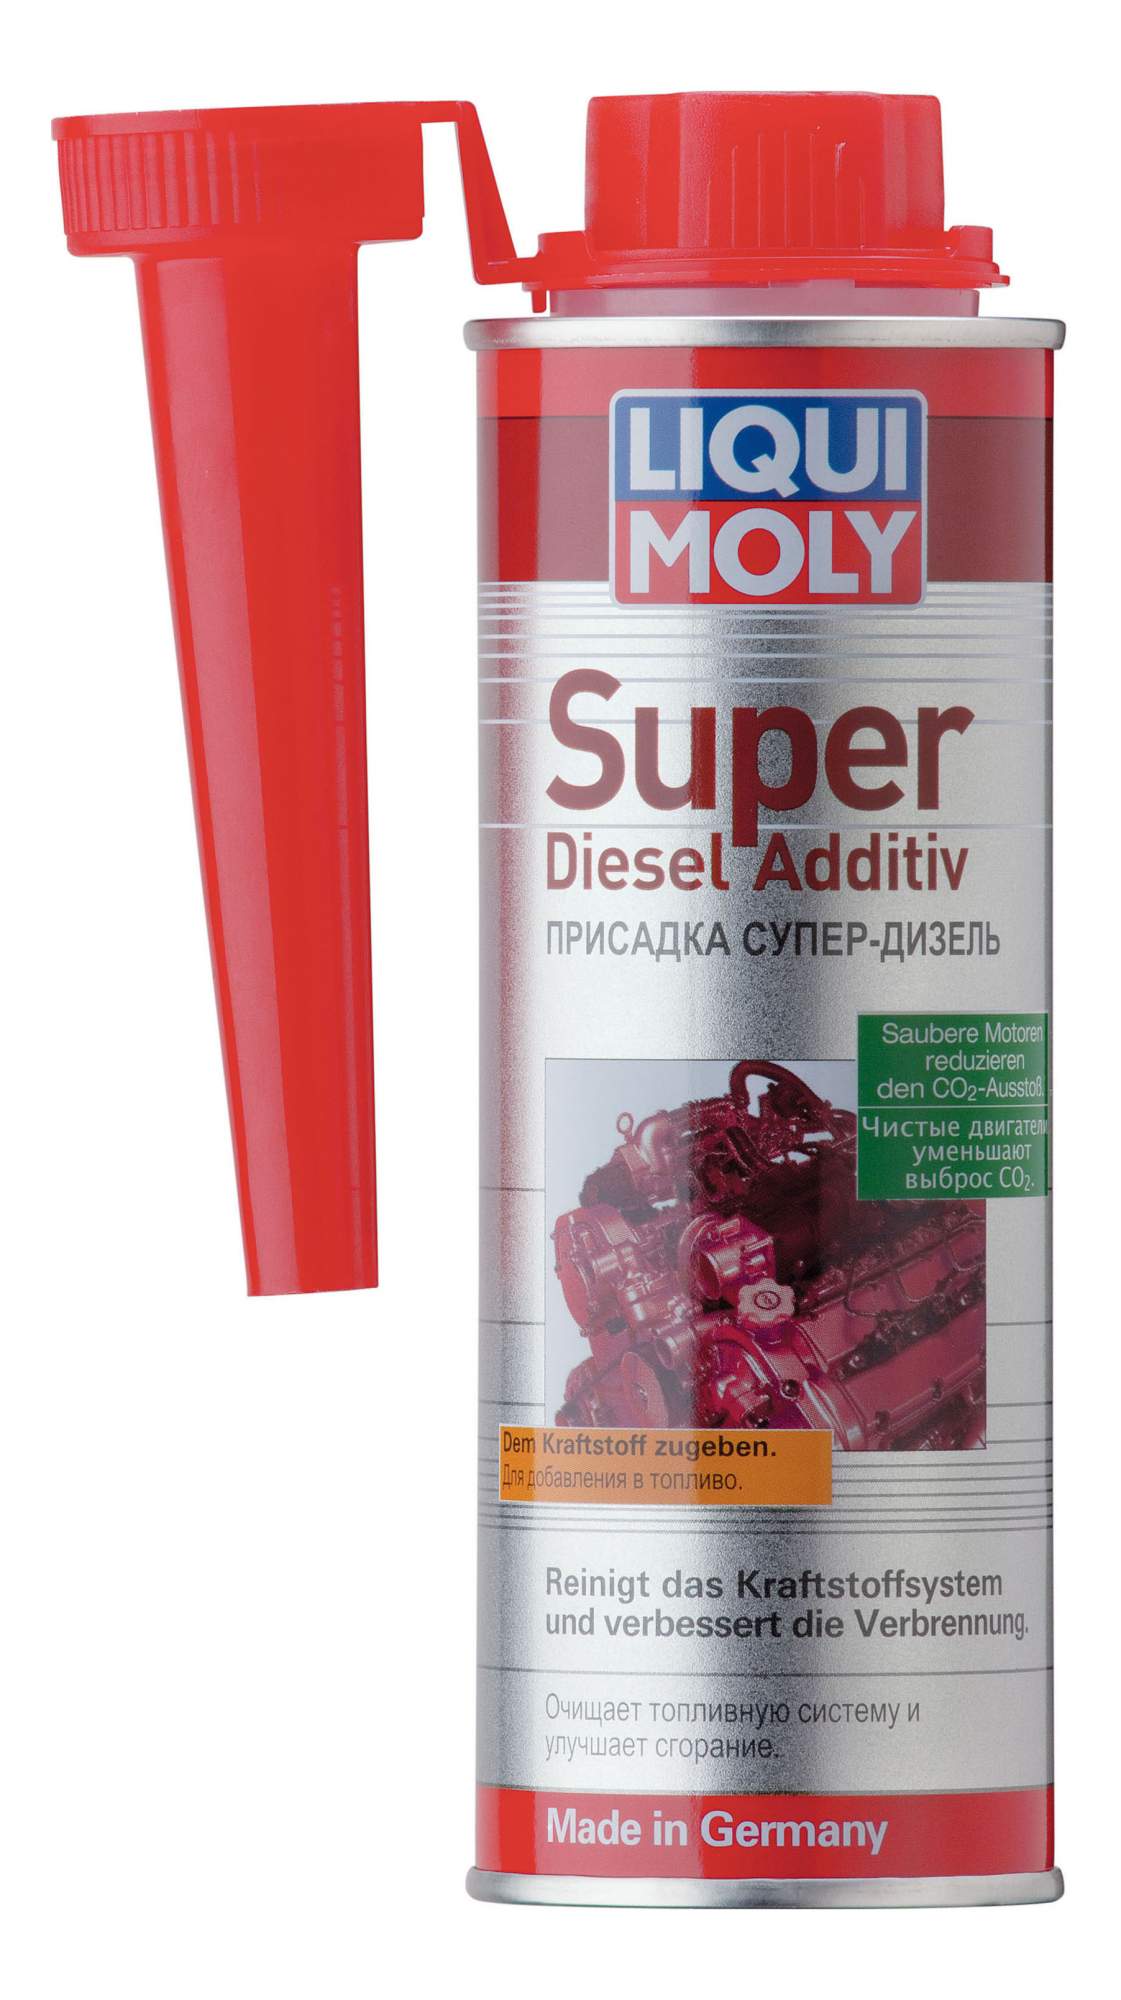 Присадка супер-дизель LIQUI MOLY Super Diesel Additiv (0,25л) - купить в METRO - СберМаркет, цена на Мегамаркет